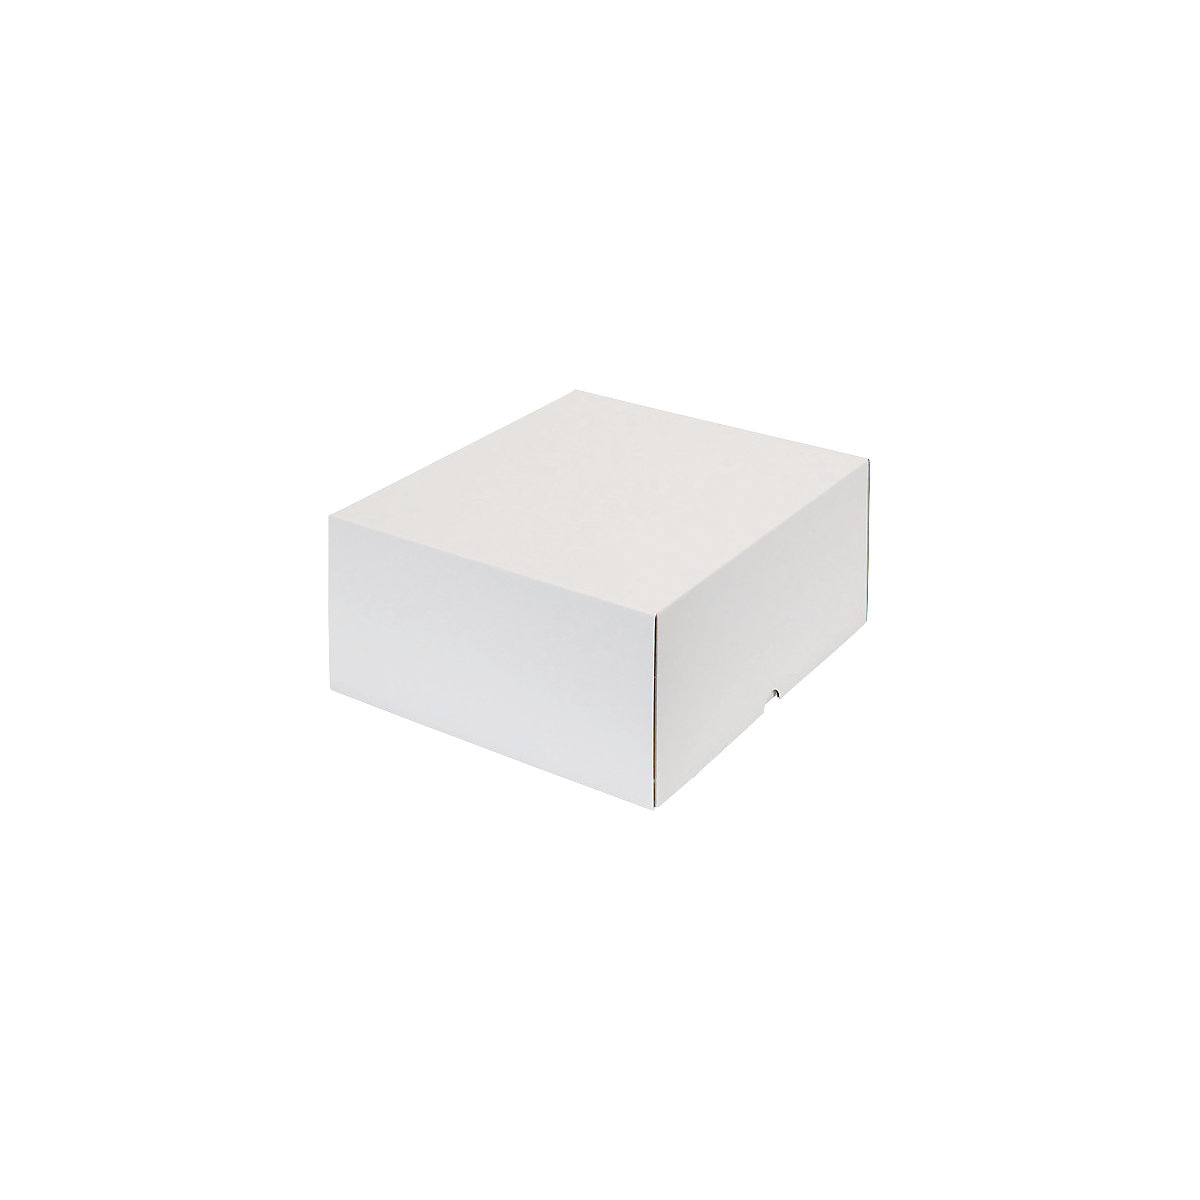 Stülpdeckelkarton, braun, Innenmaße 325 x 274 x 143 mm, weiß, ab 50 Stk